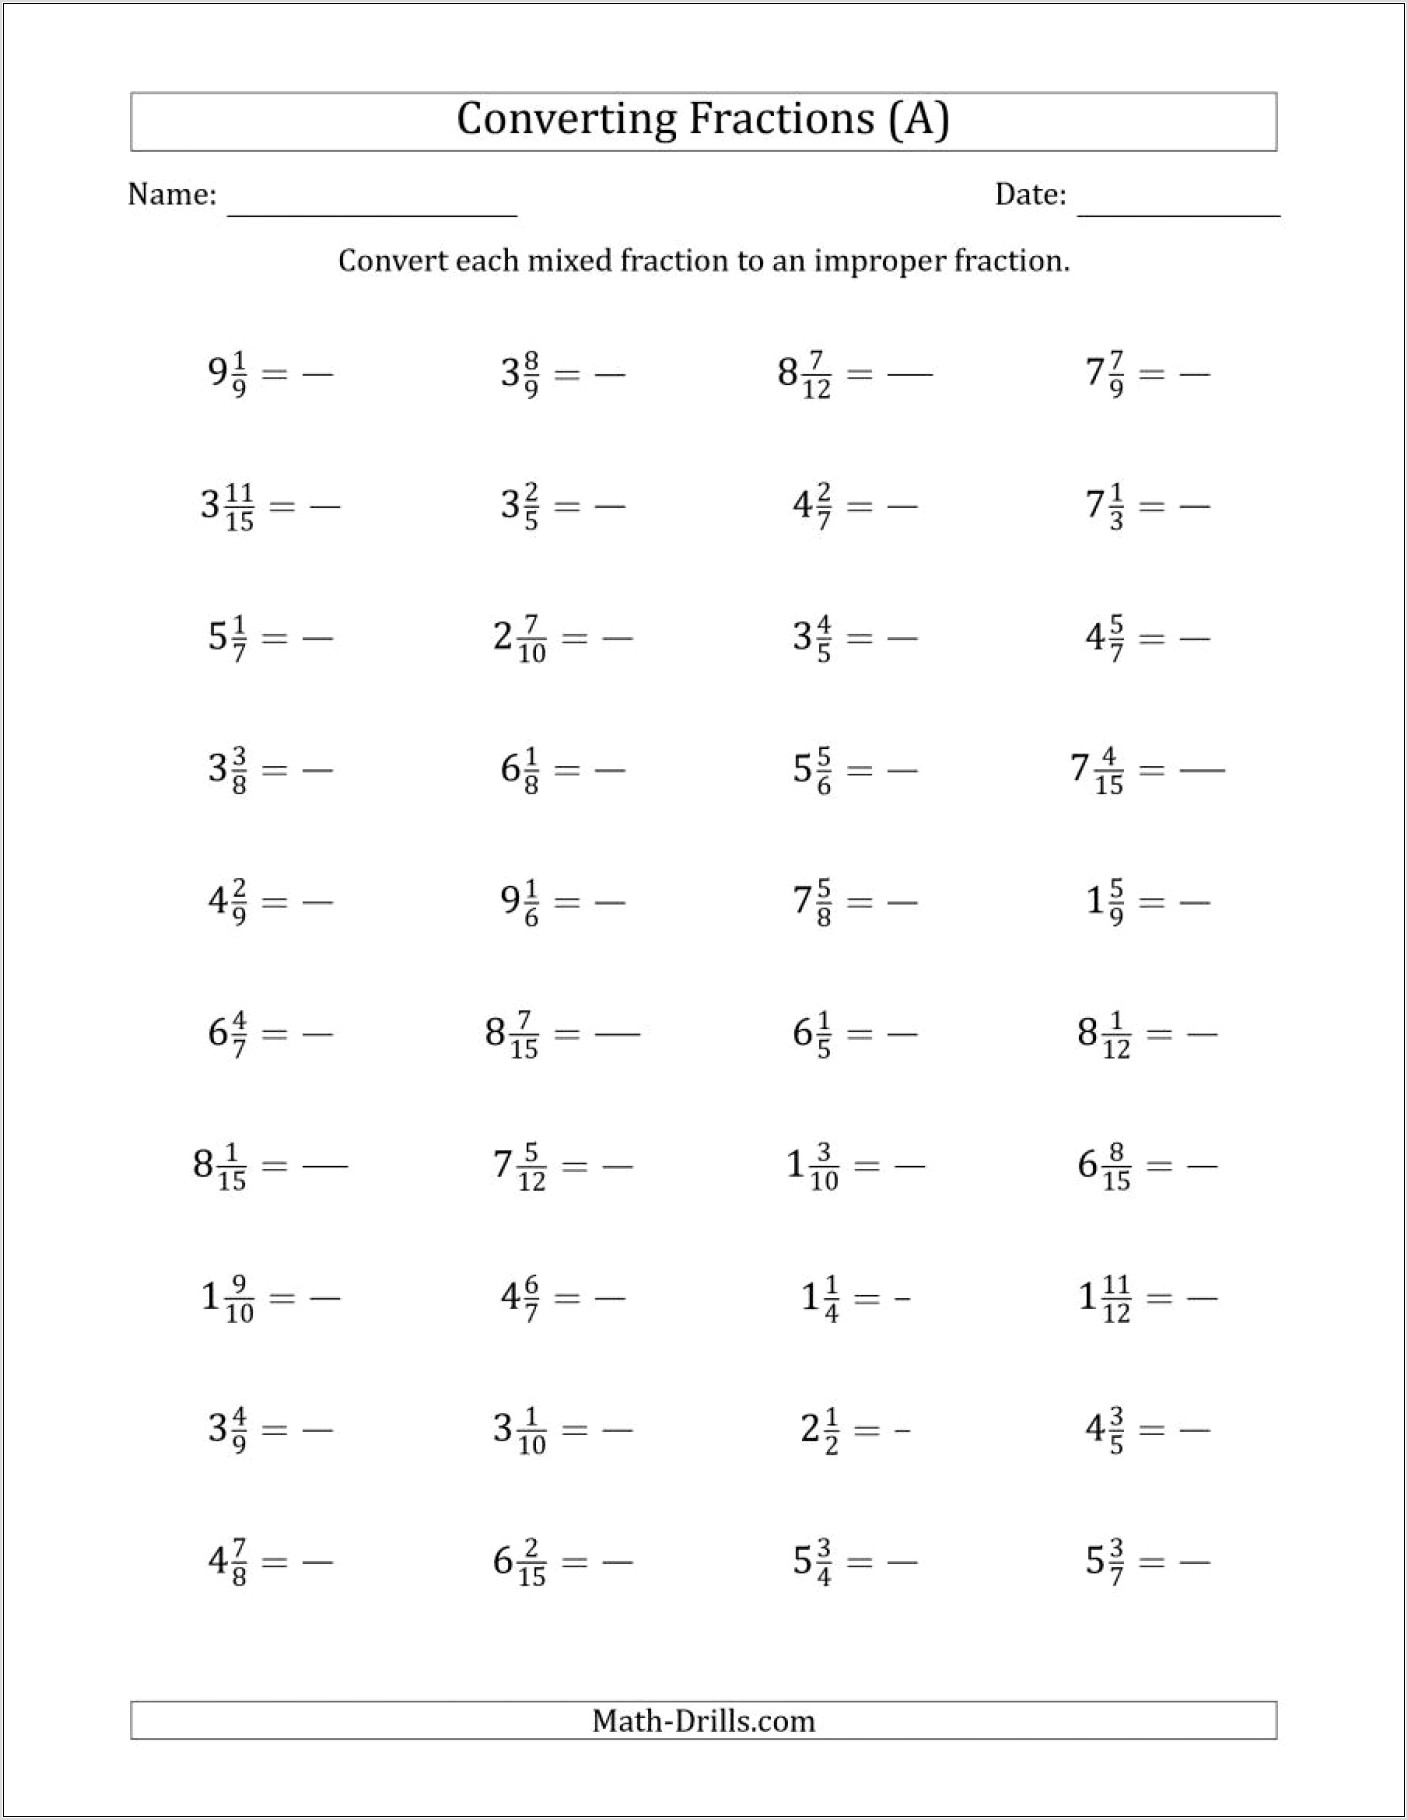 Worksheet On Fractions For Grade 5